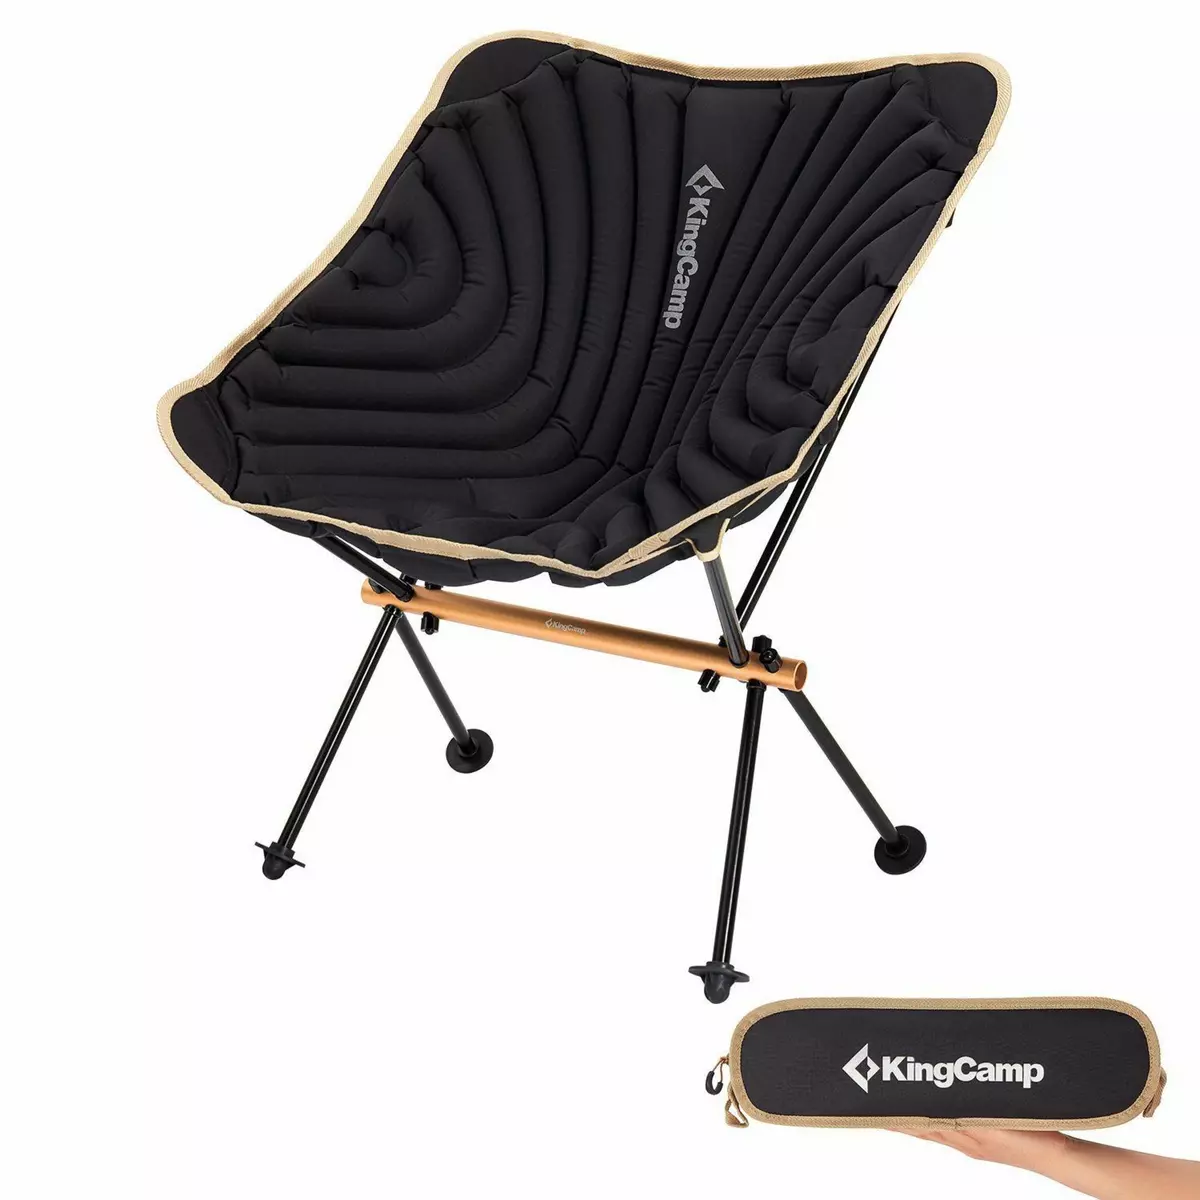 KINGCAMP Chaise de camping gonflable - Kingcamp - Noir - Sac de transport inclus